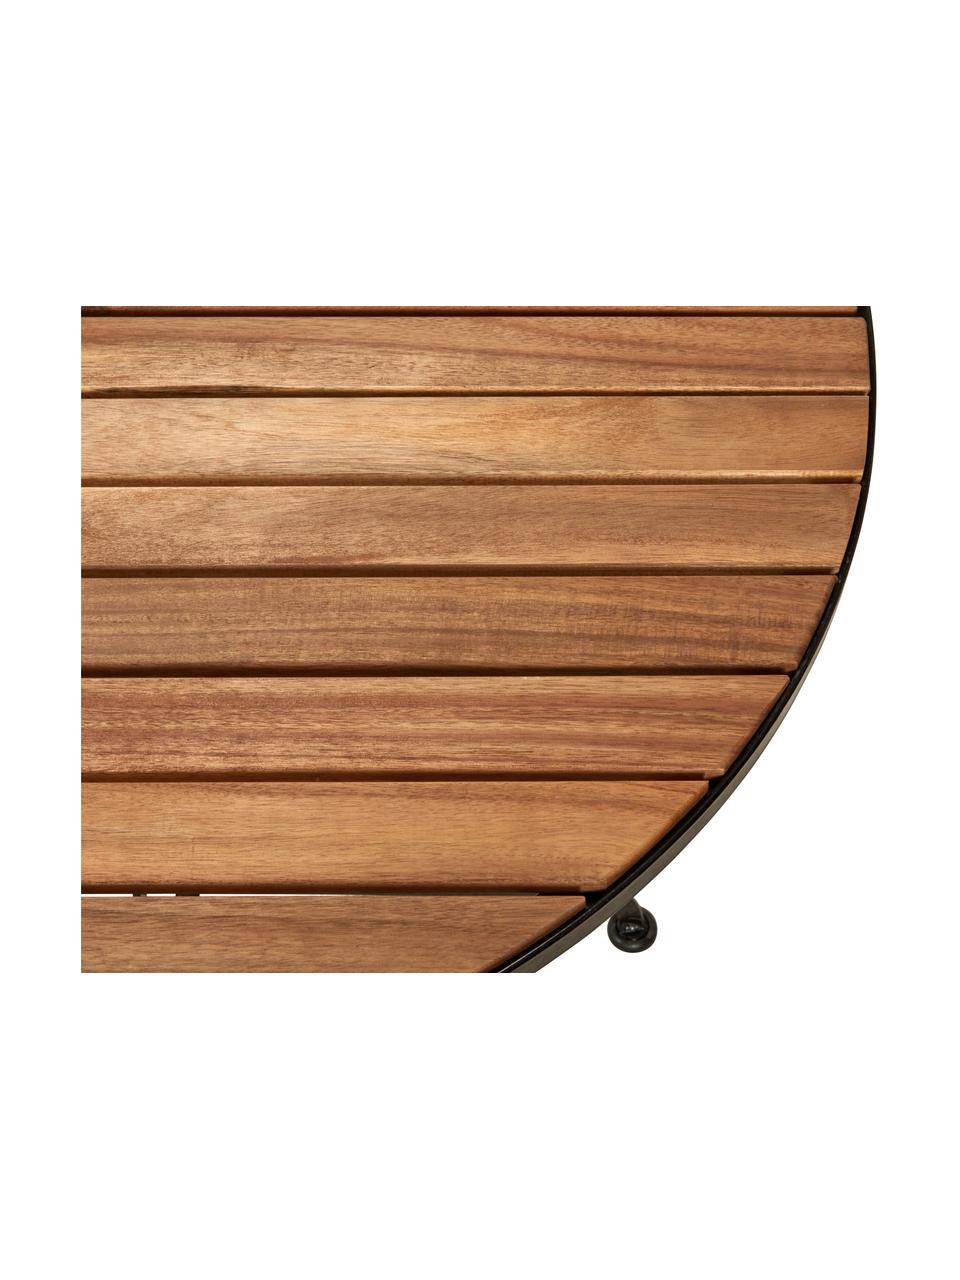 Půlkruhový balkonový stůl s dřevěnou deskou Parklife, Černá, akátové dřevo